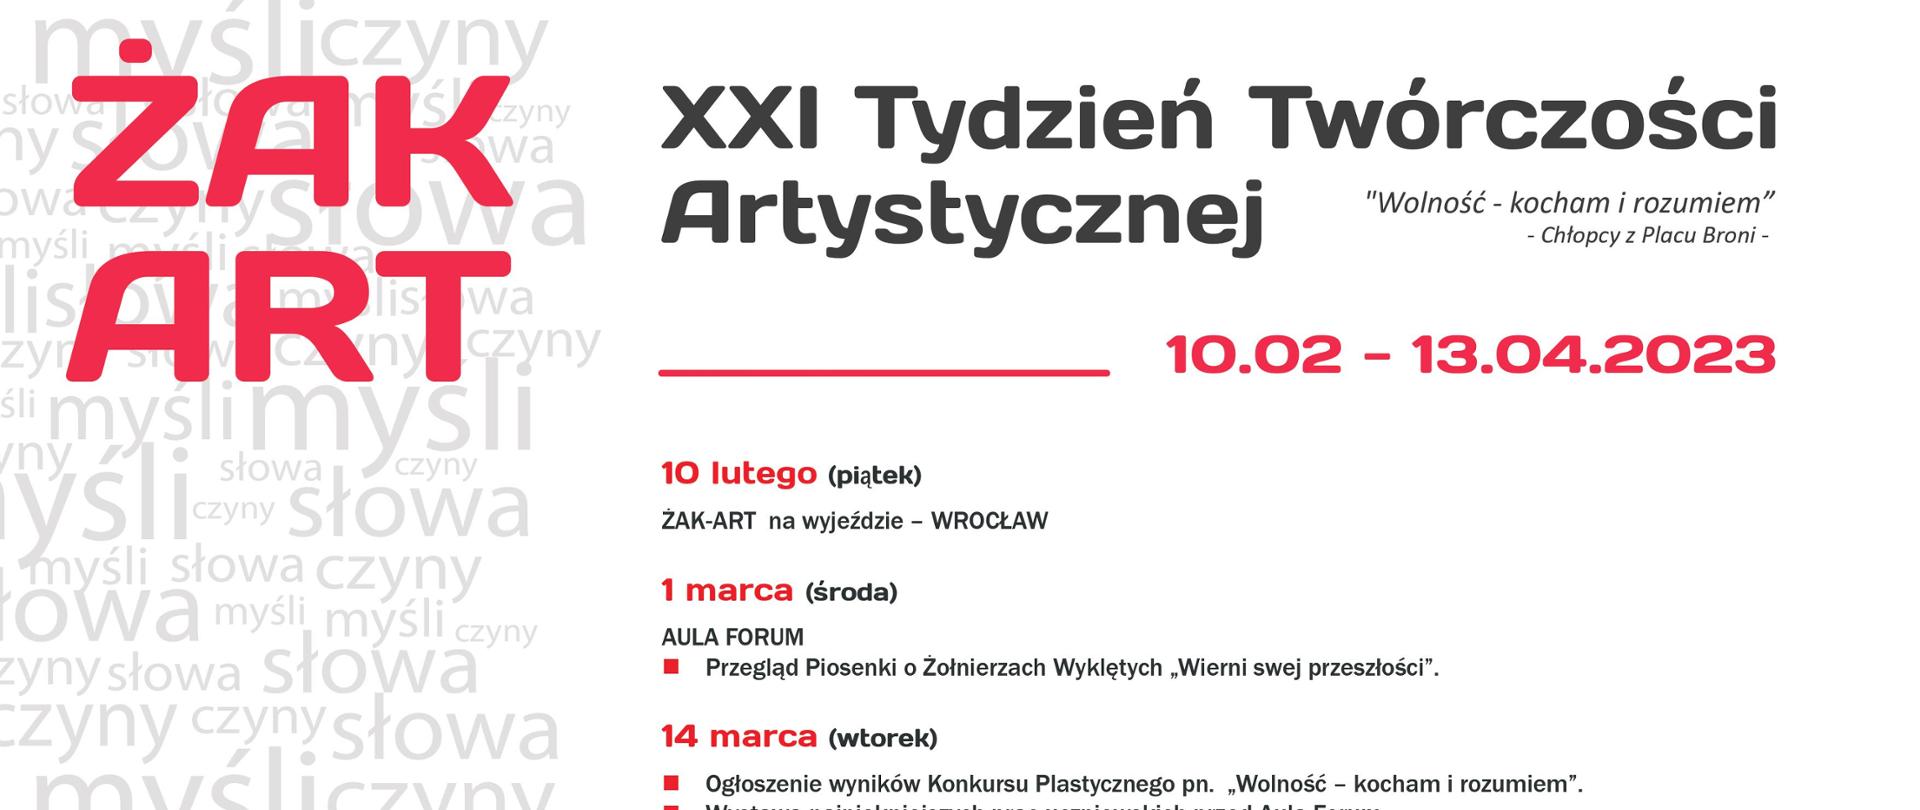 Szczegółowy program wydarzeń kulturalnych odbywających się w Zespole Szkół w Polkowicach 